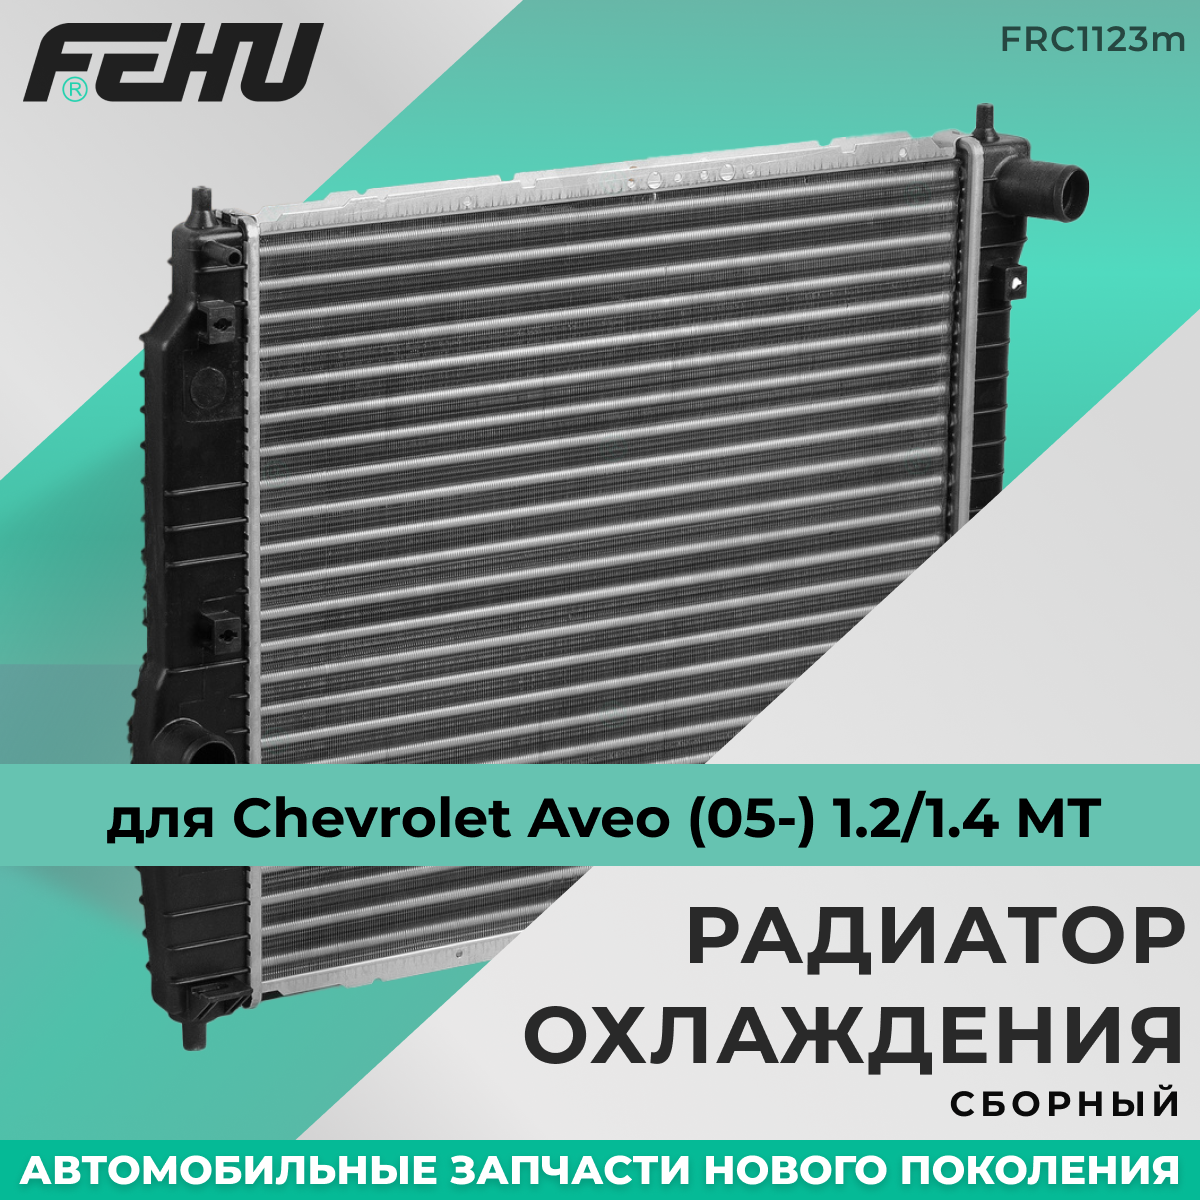 Радиатор охлаждения FEHU (феху) сборный Chevrolet Aveo/Шевроле Авео (05-) 1.2/1.4 A/C MT арт.